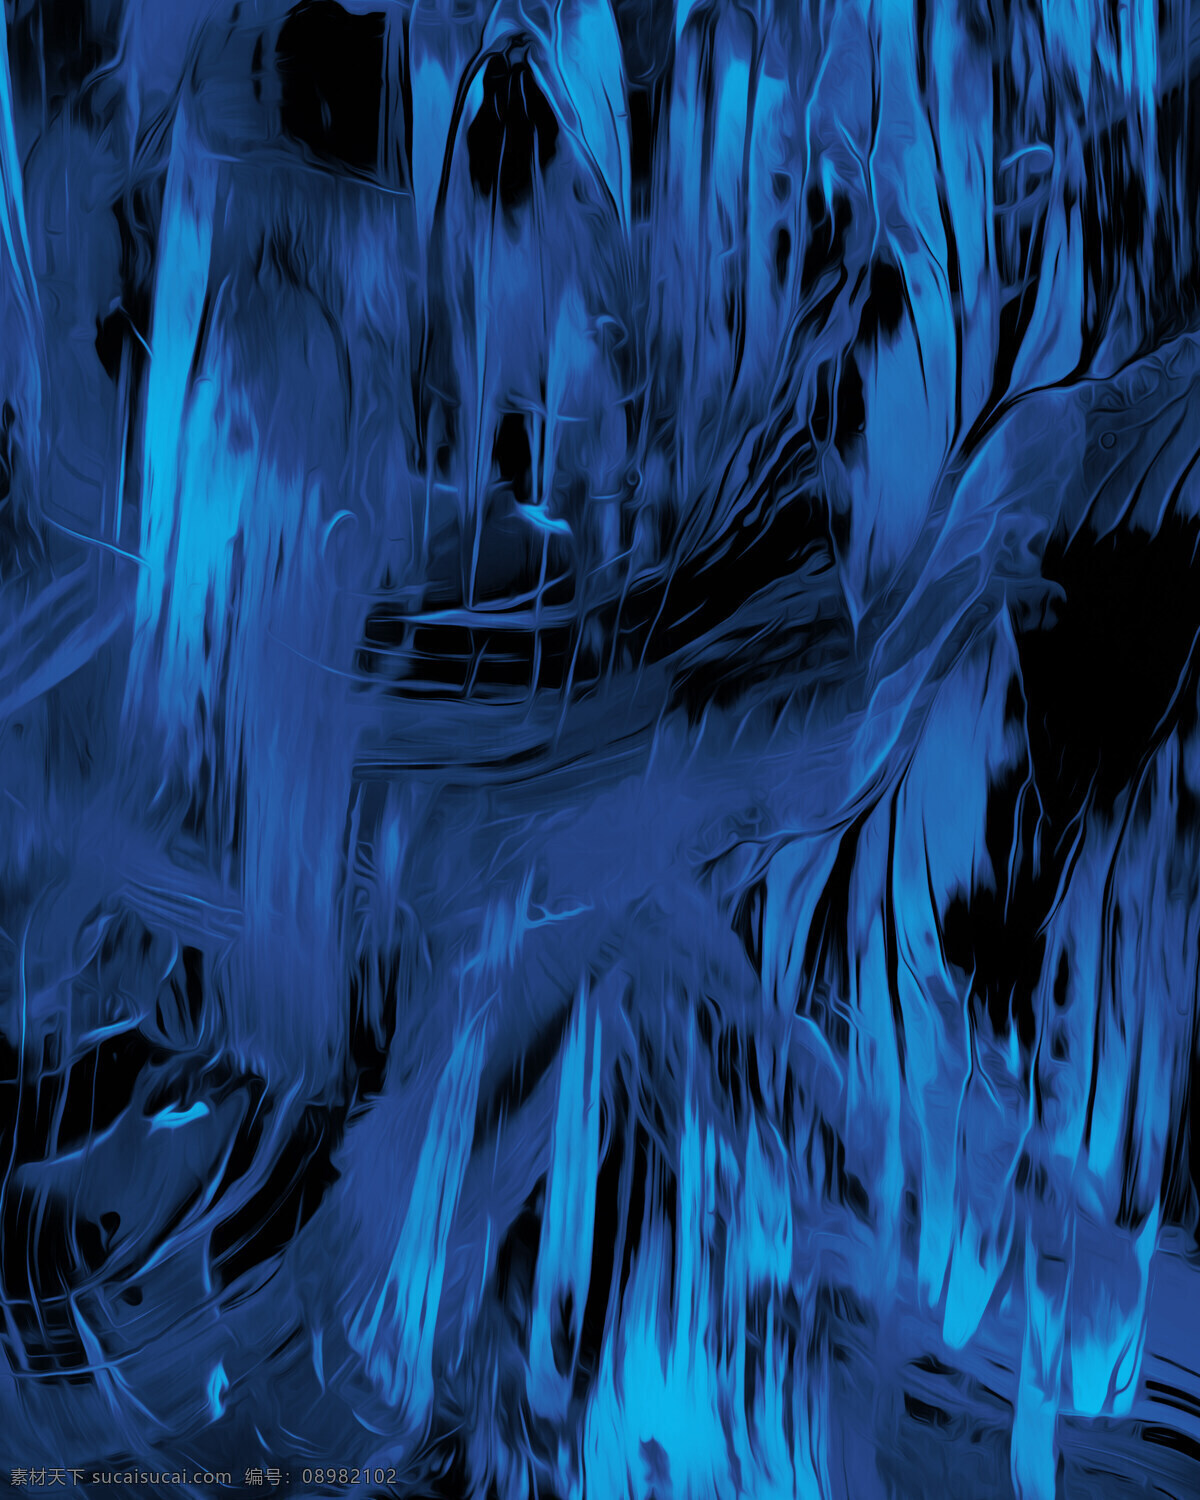 蓝色 绚丽 抽象 背景图片 蓝色背景 绚丽抽象 抽象背景 线条 油画纹理 液态流体 底纹边框 背景底纹